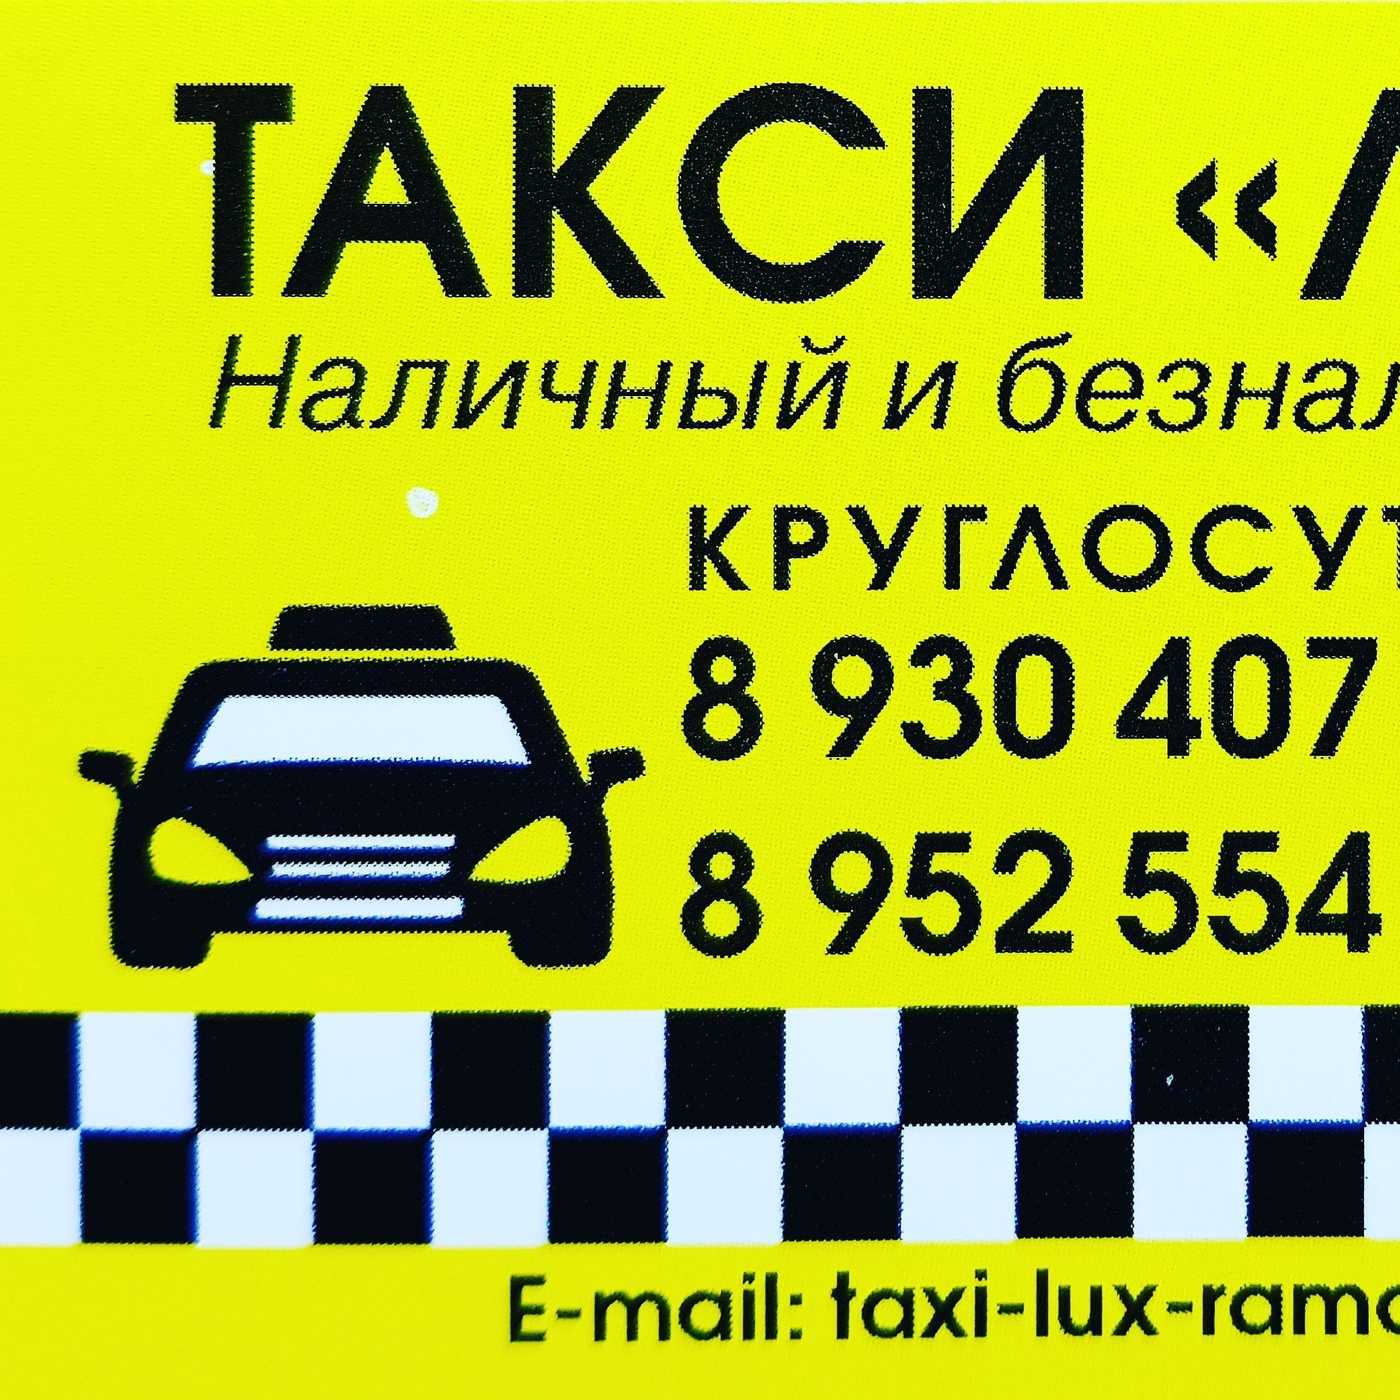 Александров такси номер телефона. Такси Люкс. Номер такси. Номера таксистов. Такси Люкс номер телефона.